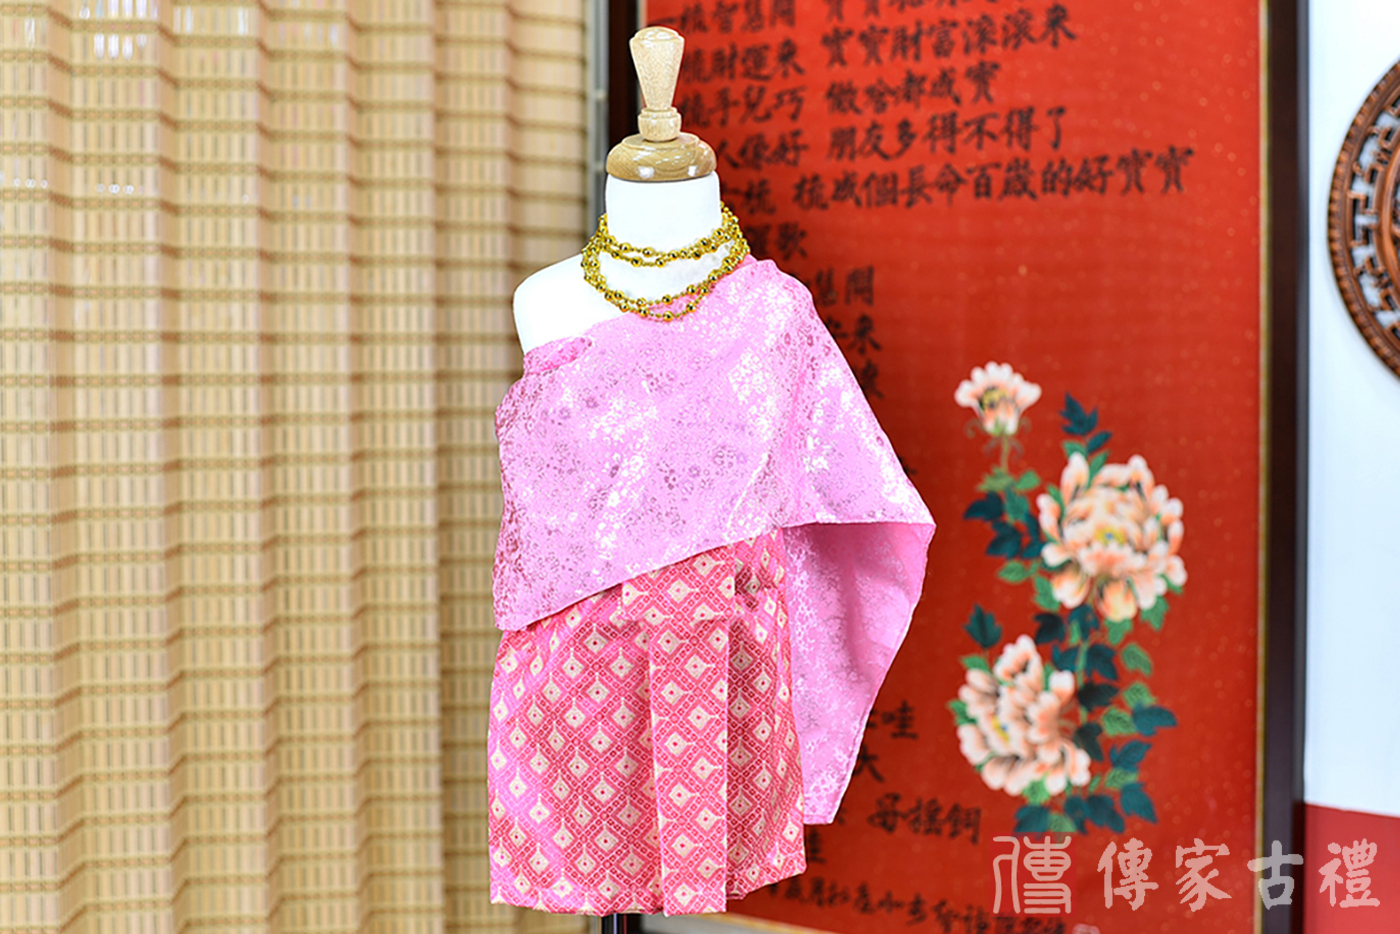 2024-02-22小孩皇室泰服古裝禮服。粉紫色的紋路披肩與粉色小方格狀短裙的泰式古裝禮服。照片集